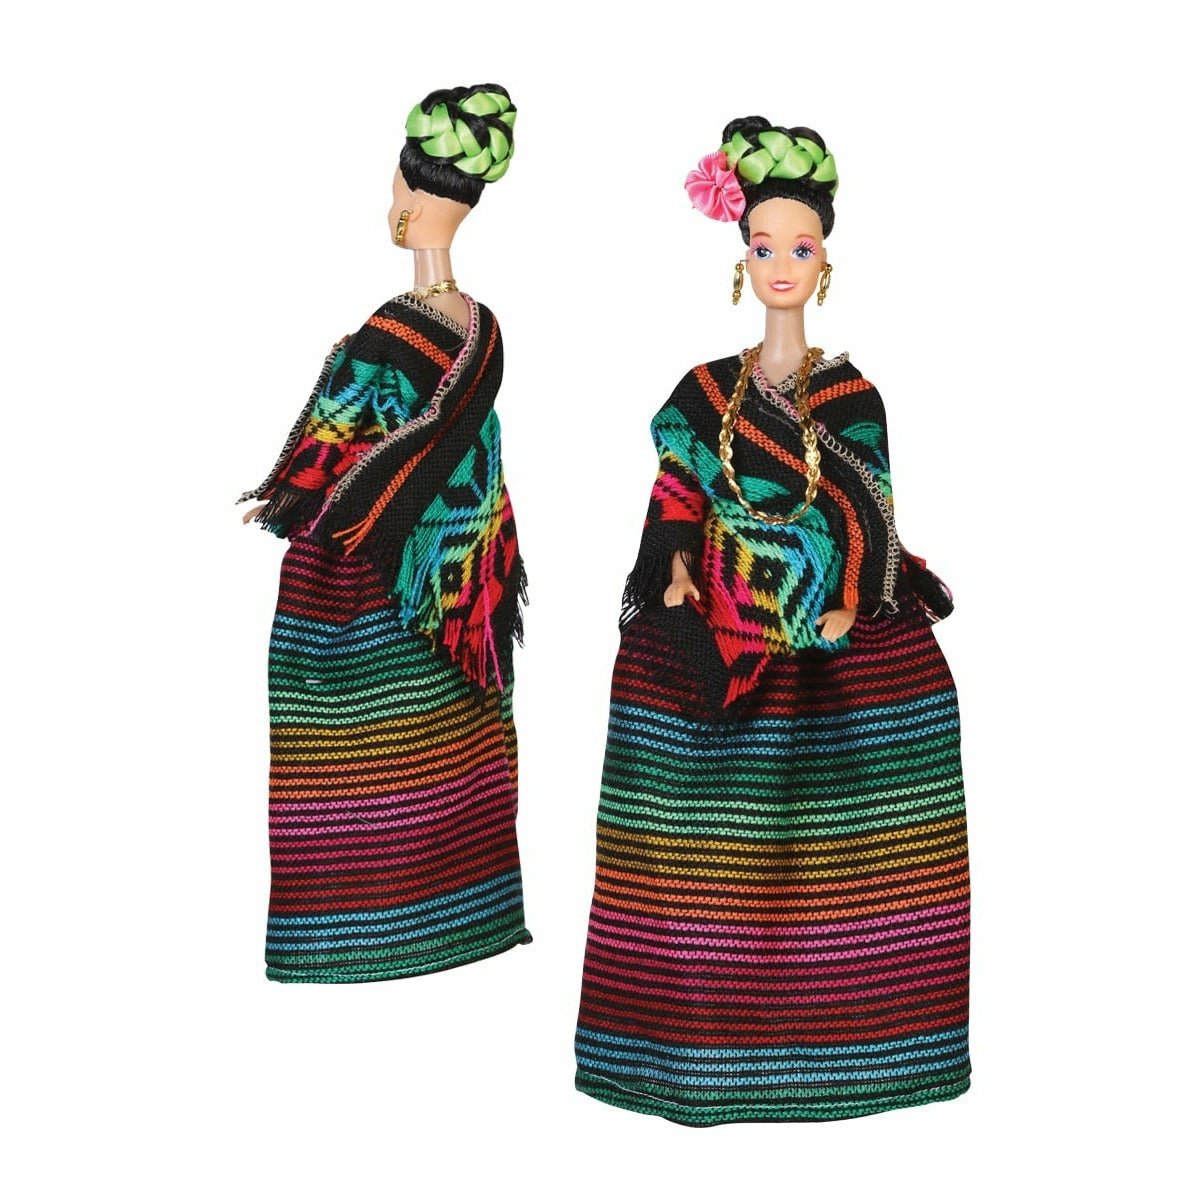 Queretaro Mexican Doll - CharroAzteca.com